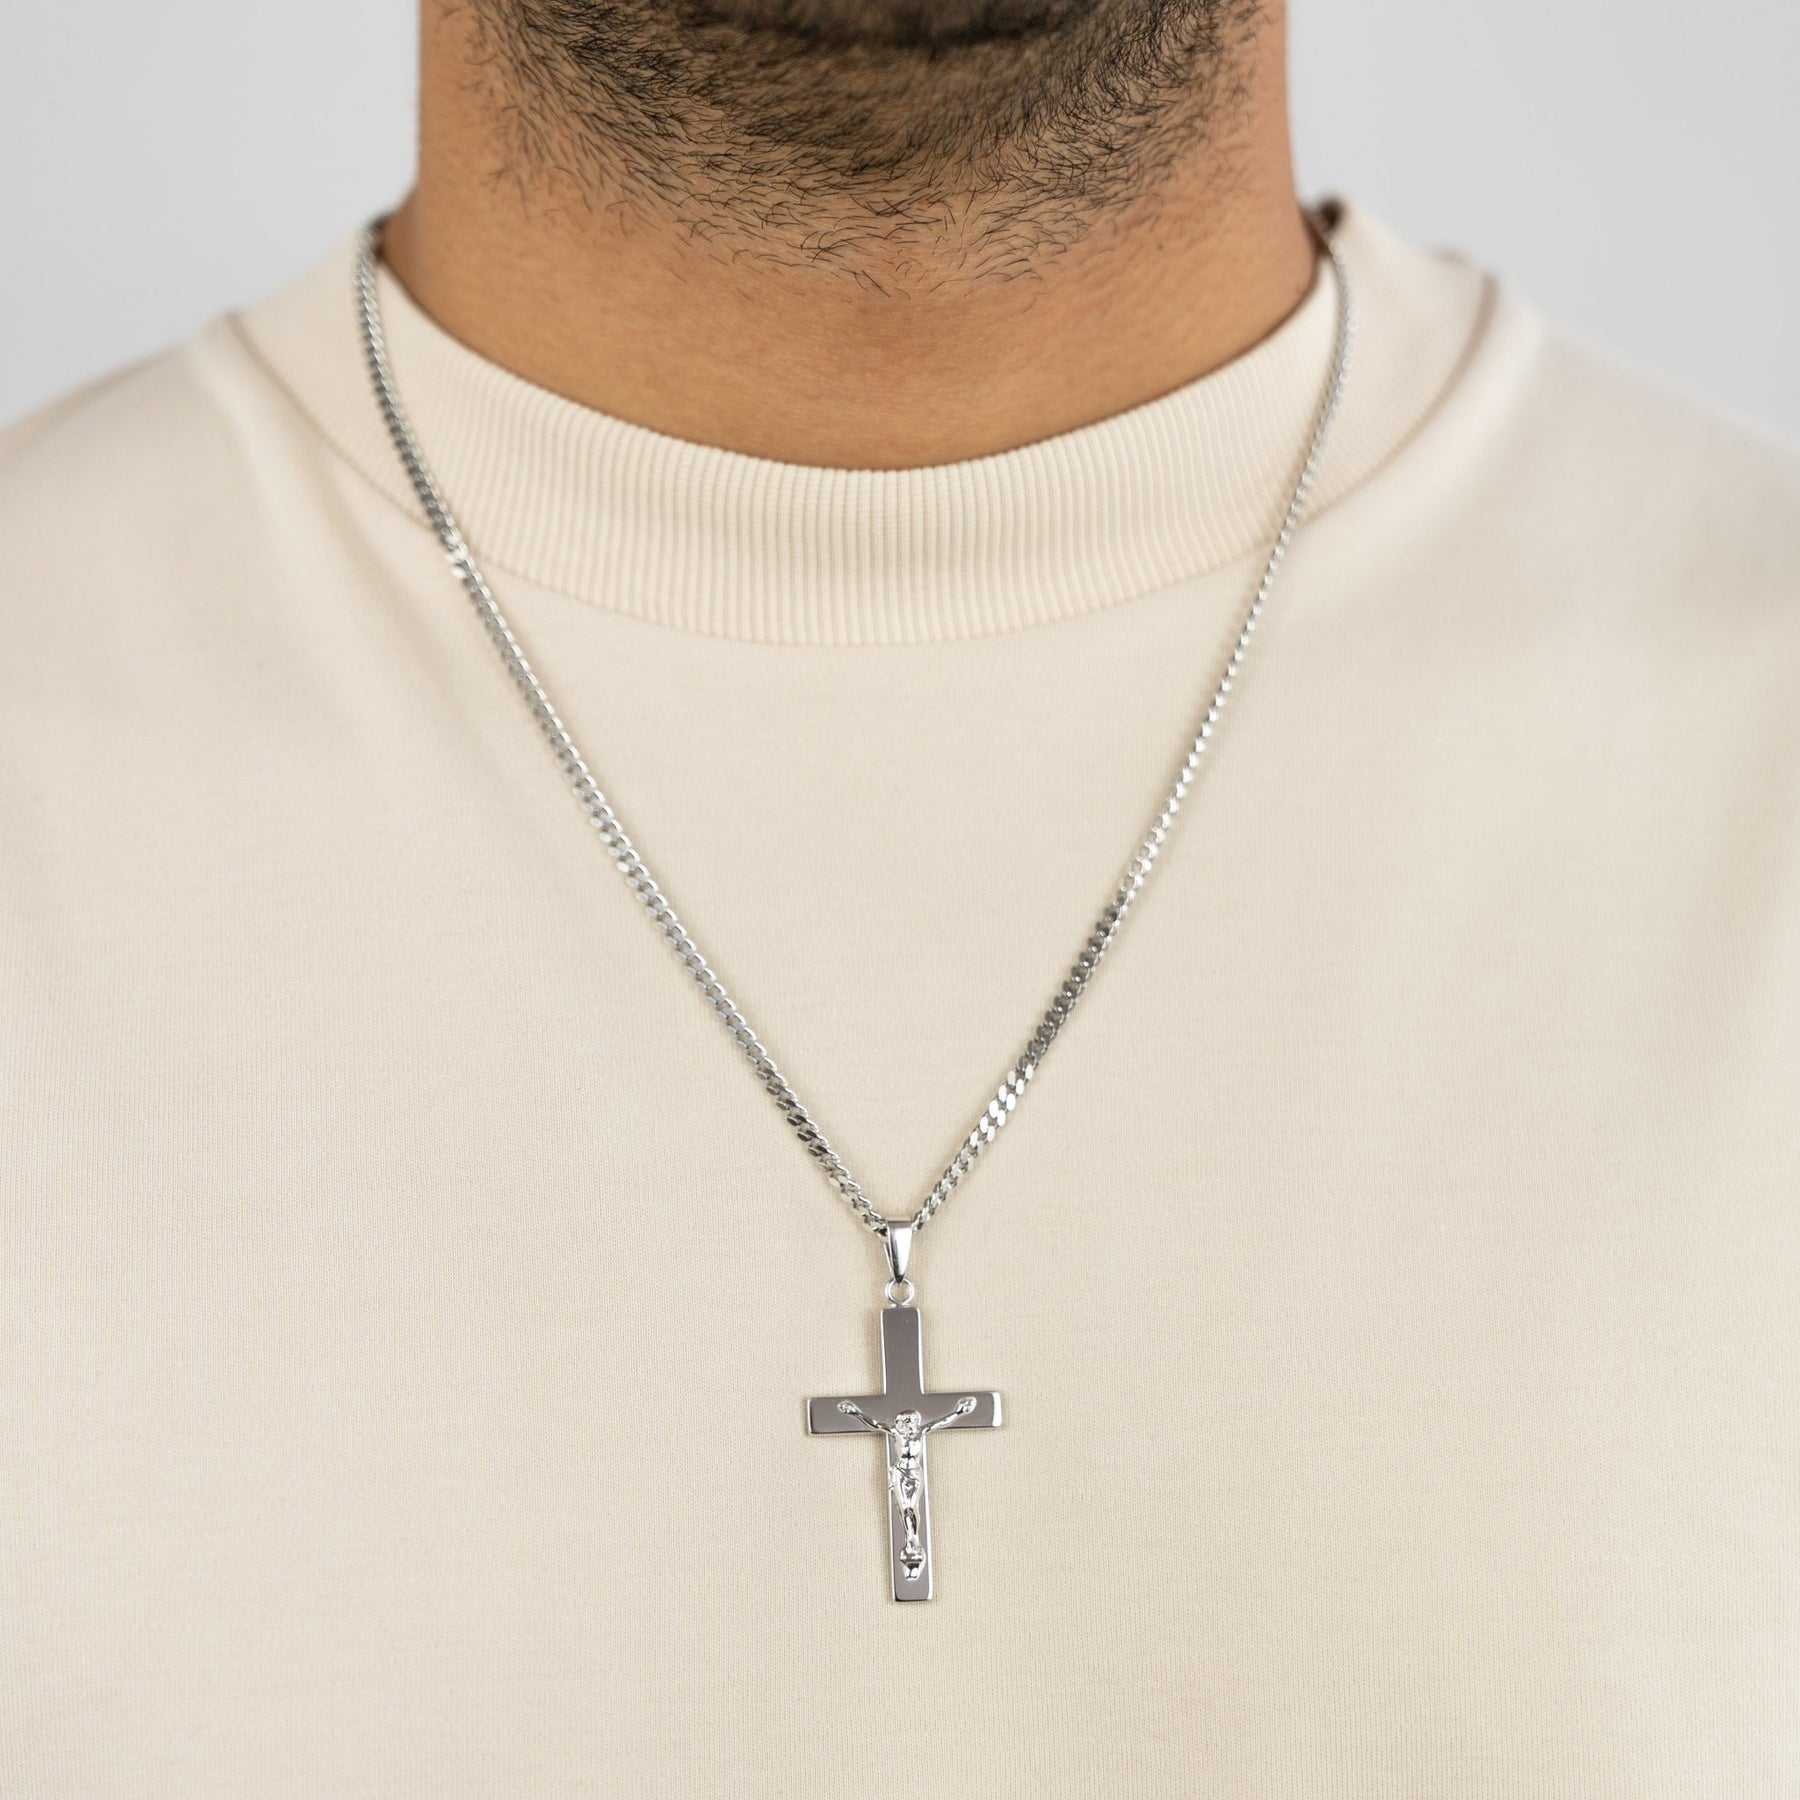 IDENTIM® Herren Halskette Jesus Kreuz Anhänger 925 Silber Rhodiniert